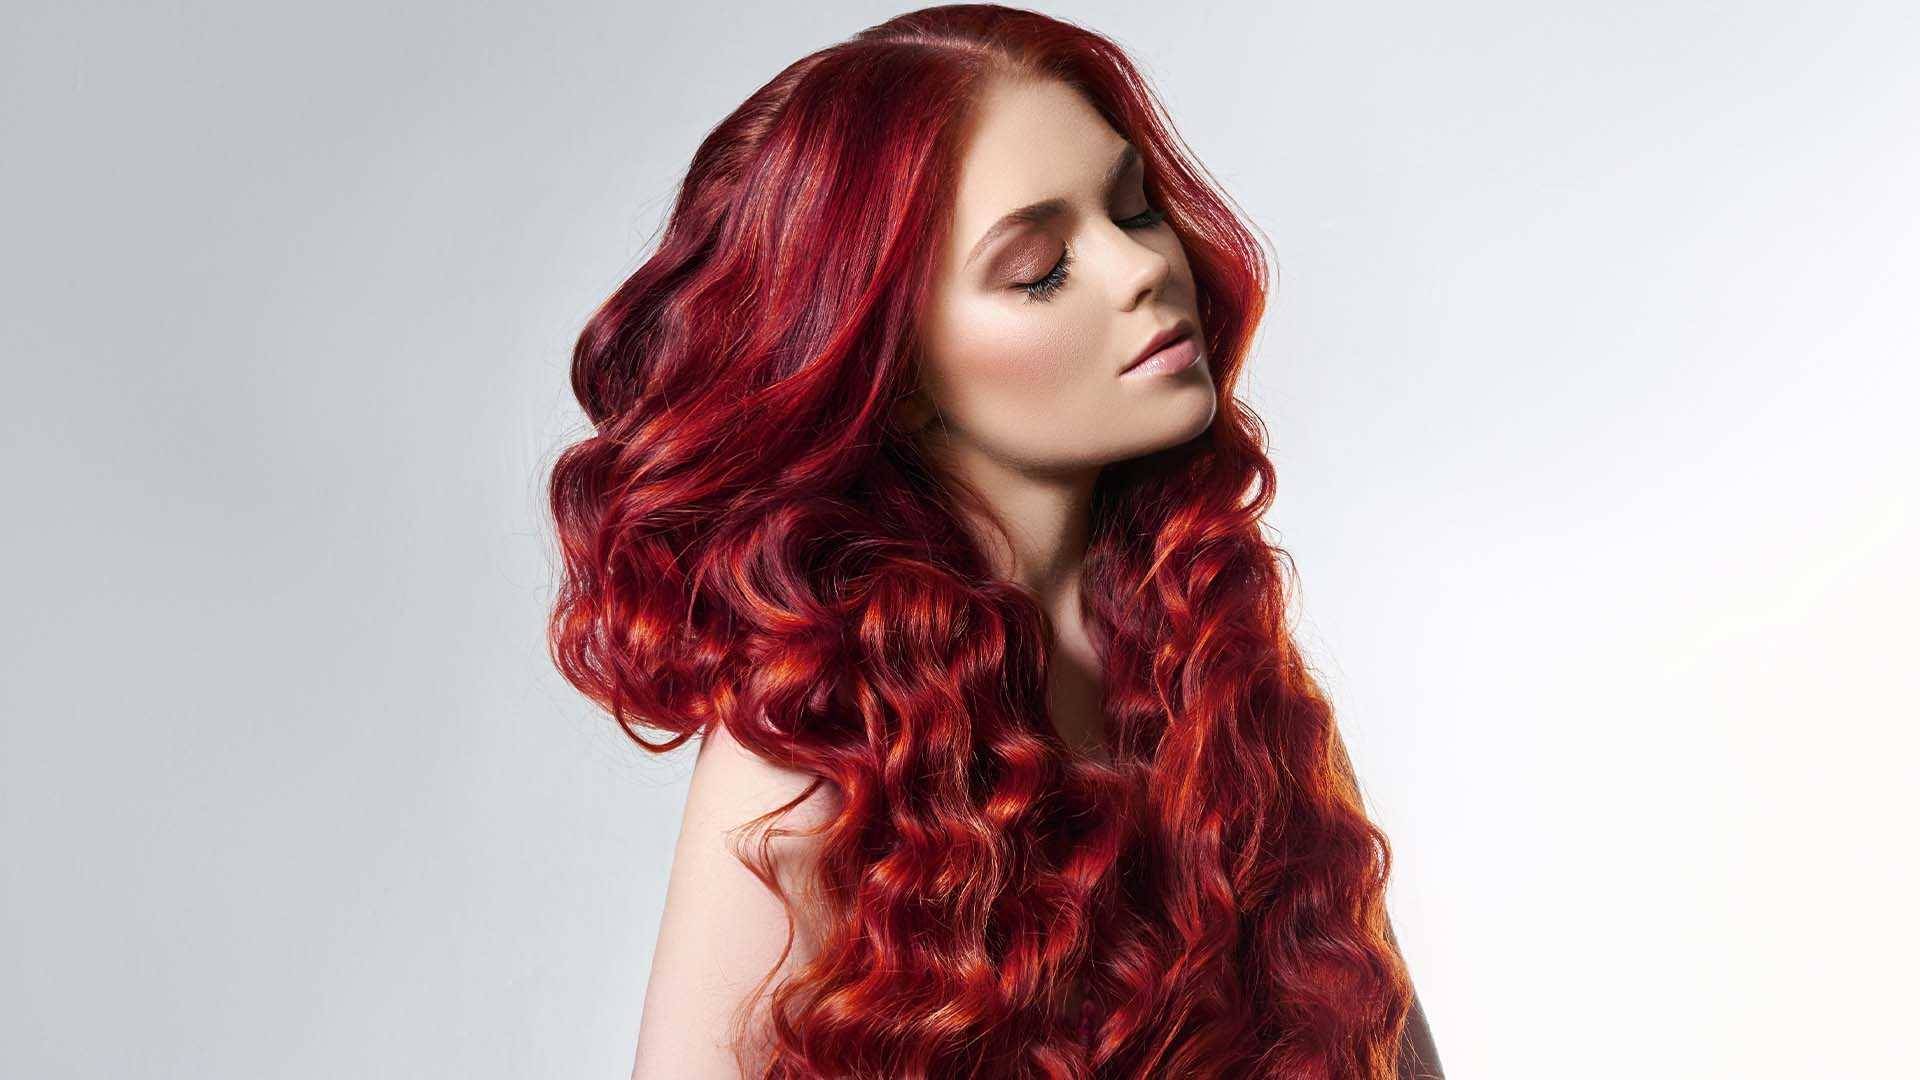 دختری با موهای بلند و مواج قرمز فانتزی یا همان رنگ موی قرمز آتشی